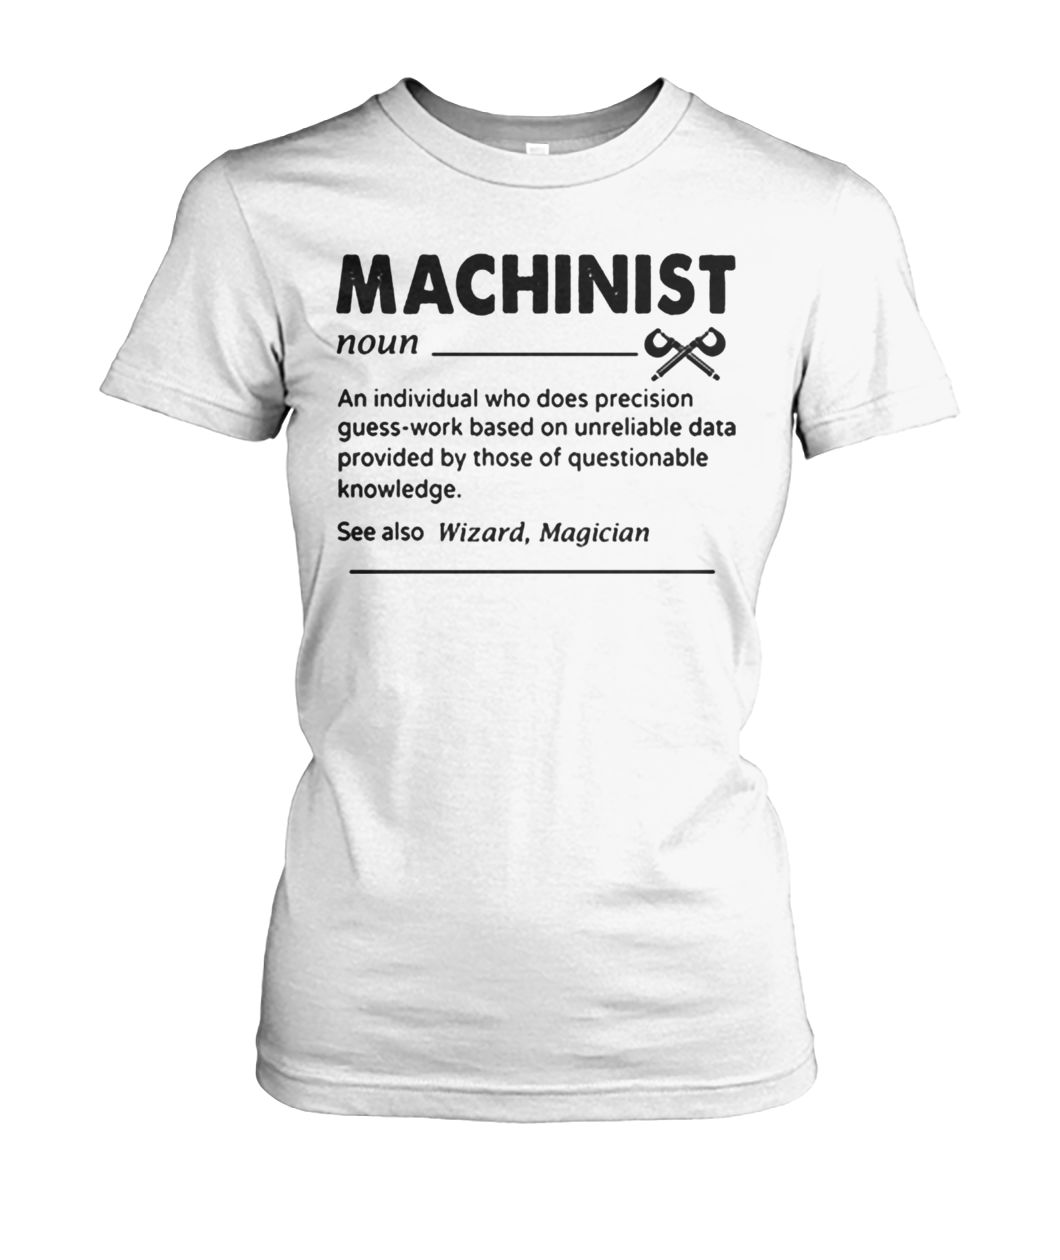 Machinist definition women's crew tee